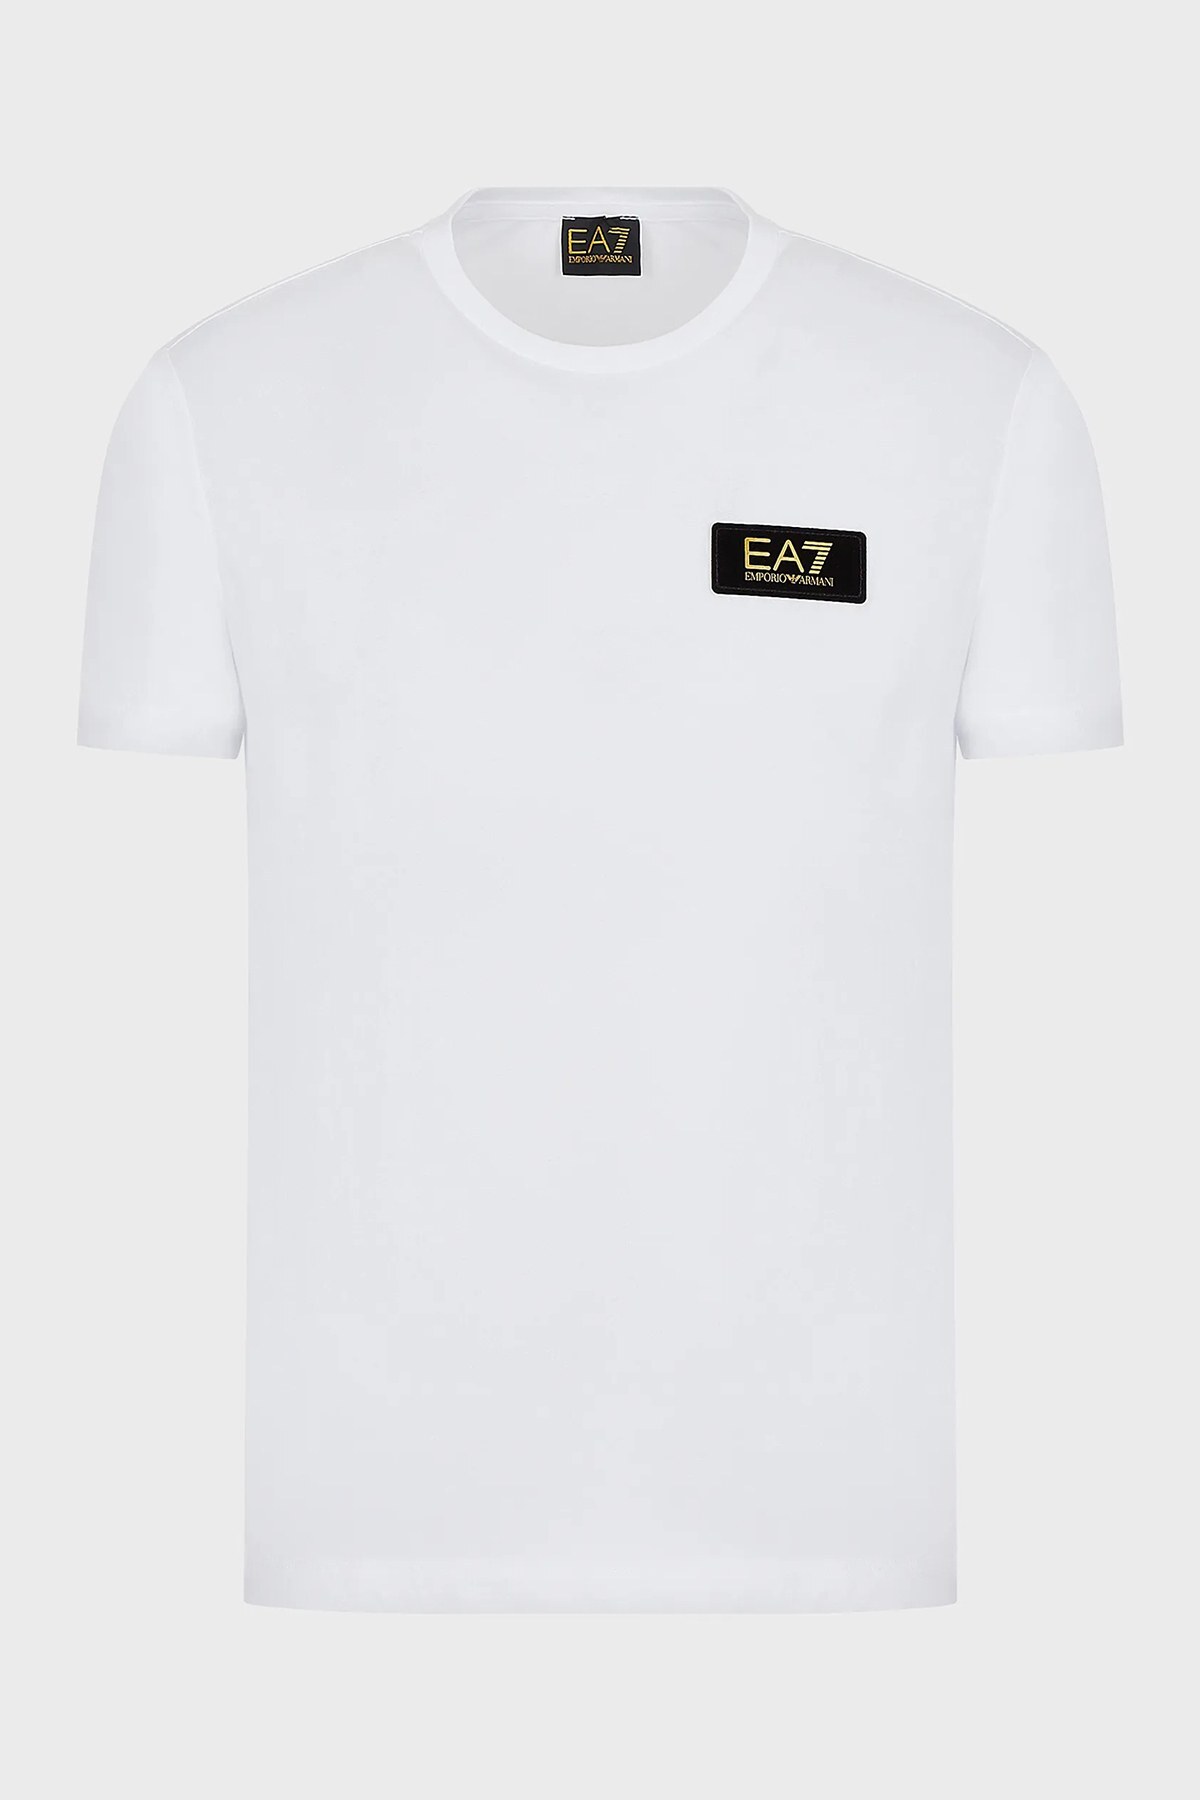 EA7 Erkek T Shirt 6KPT17 PJM9Z 1100 BEYAZ